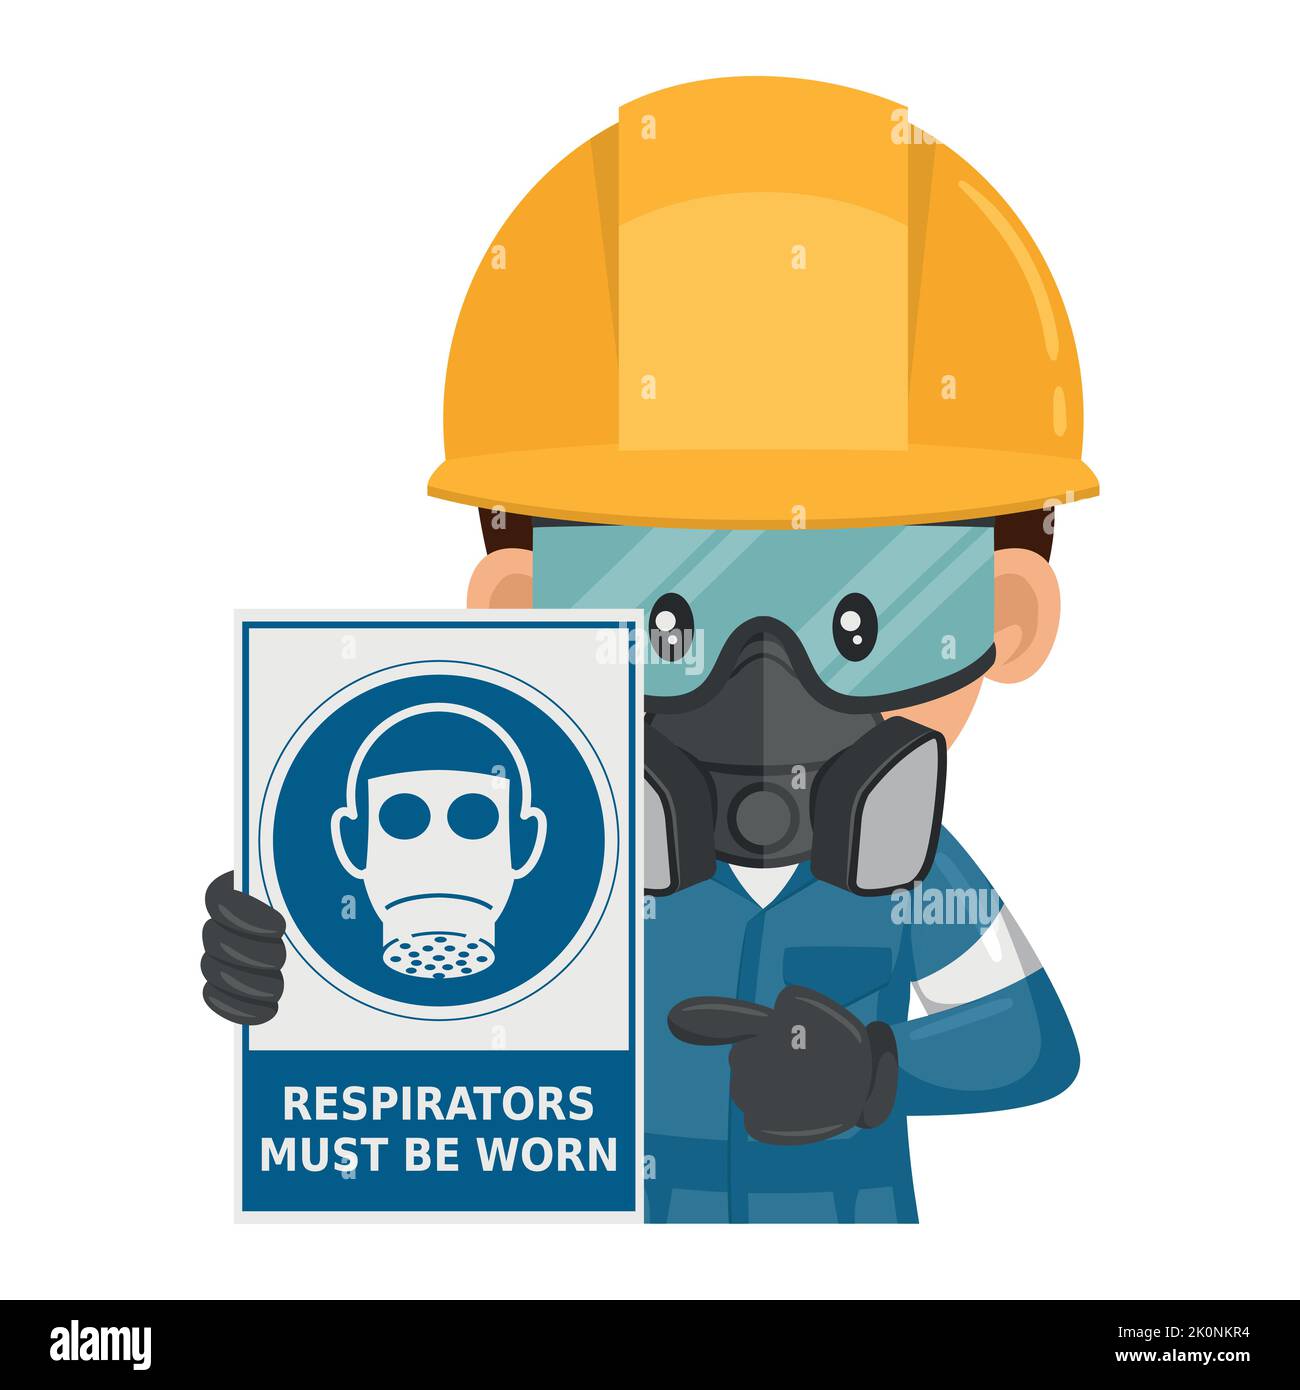 Industriearbeiter mit einem Warnschild für die obligatorische Verwendung von Atemschutzgeräten. Atemschutzgeräte müssen getragen werden. Arbeitsschutz und Arbeitsschutz bei wor Stock Vektor